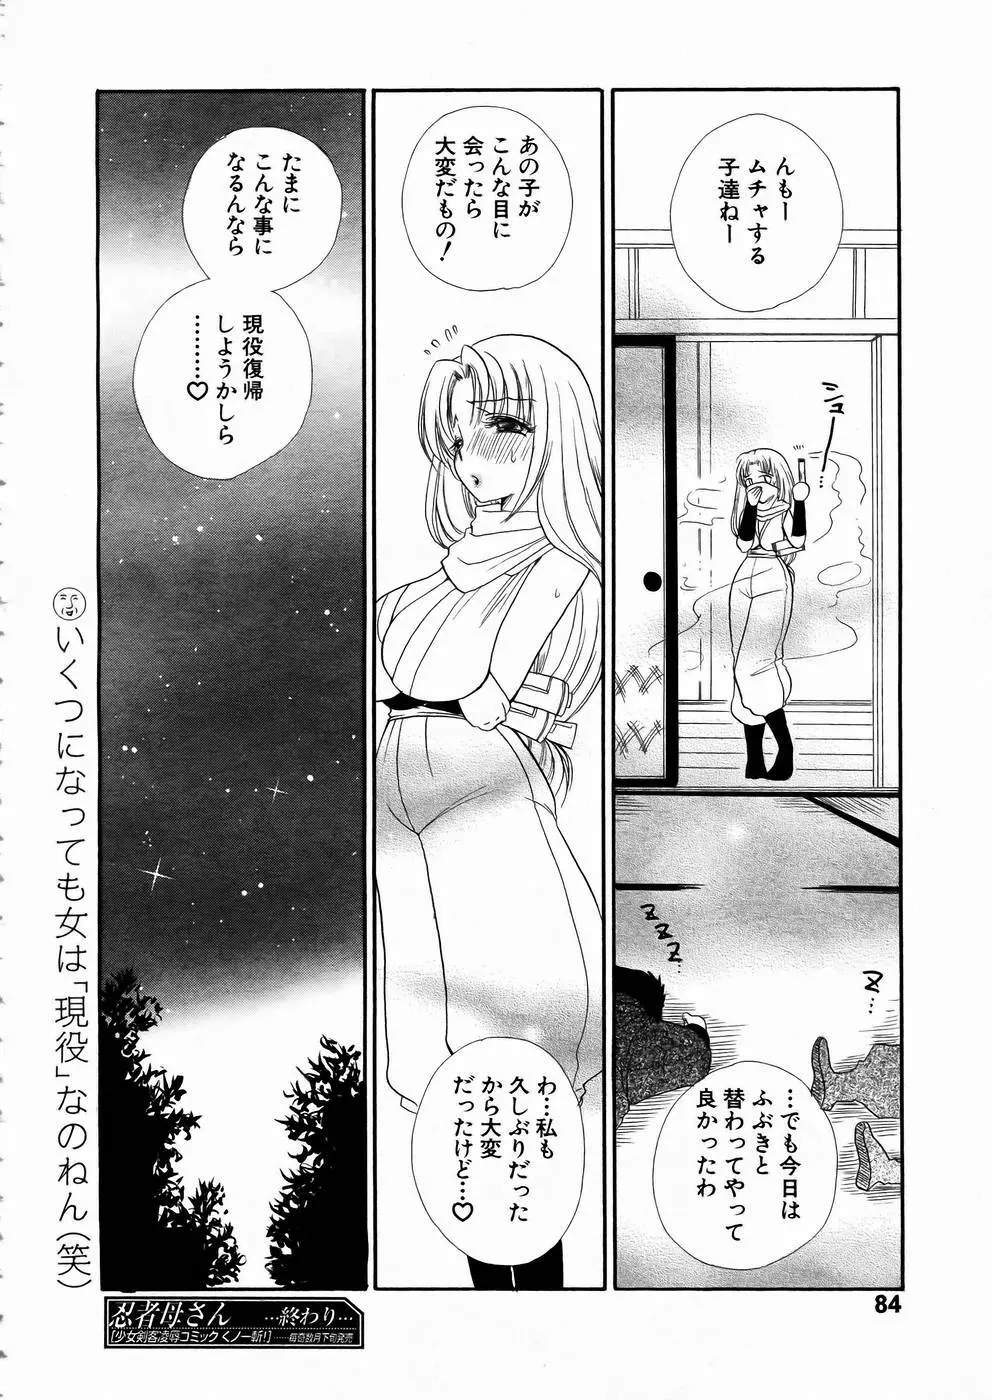 少女剣客凌辱コミック Vol.01 くノ一斬! 81ページ